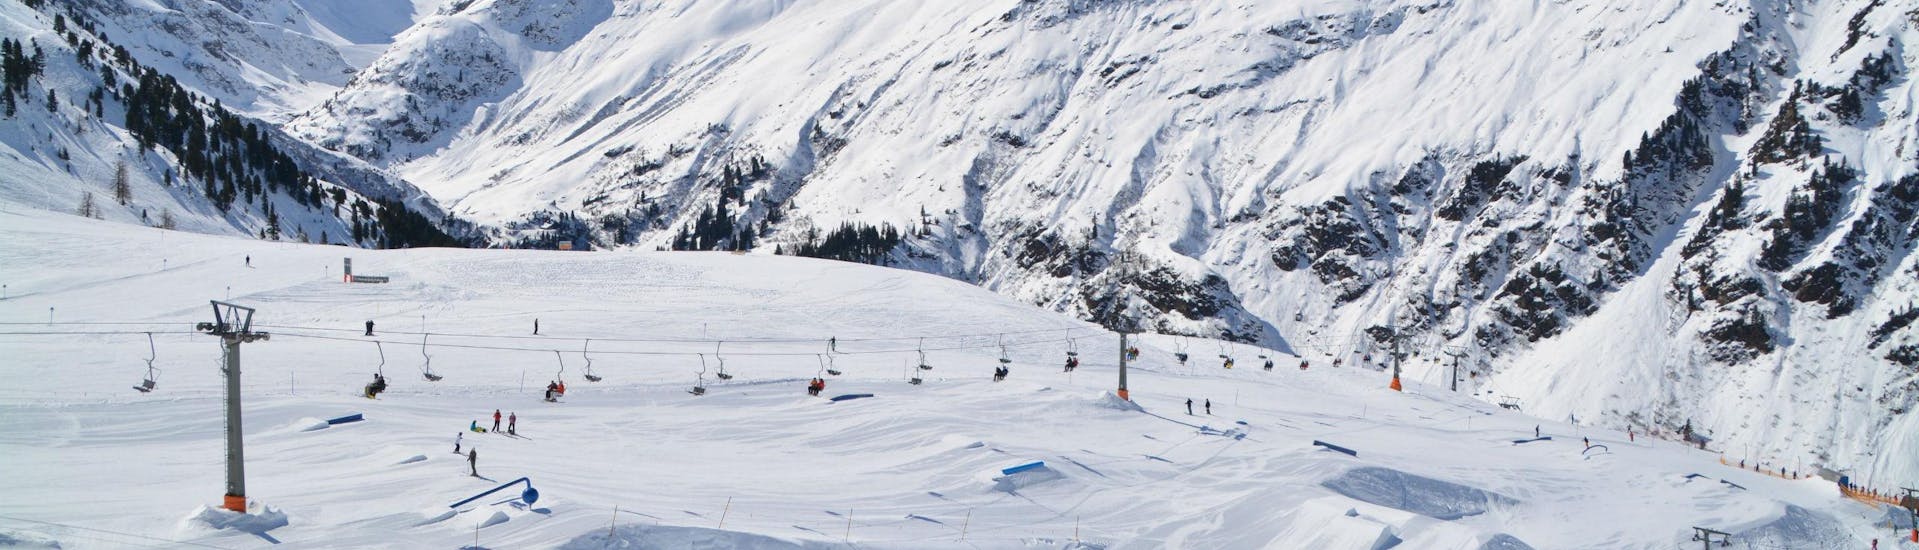 Ein Blick auf die Skipisten von St. Anton, auch bekannt als die Wiege des alpinen Skifahrens, wo örtliche Skischulen für Wintersportfans die das Skifahren lernen wollen Skikurse anbieten.